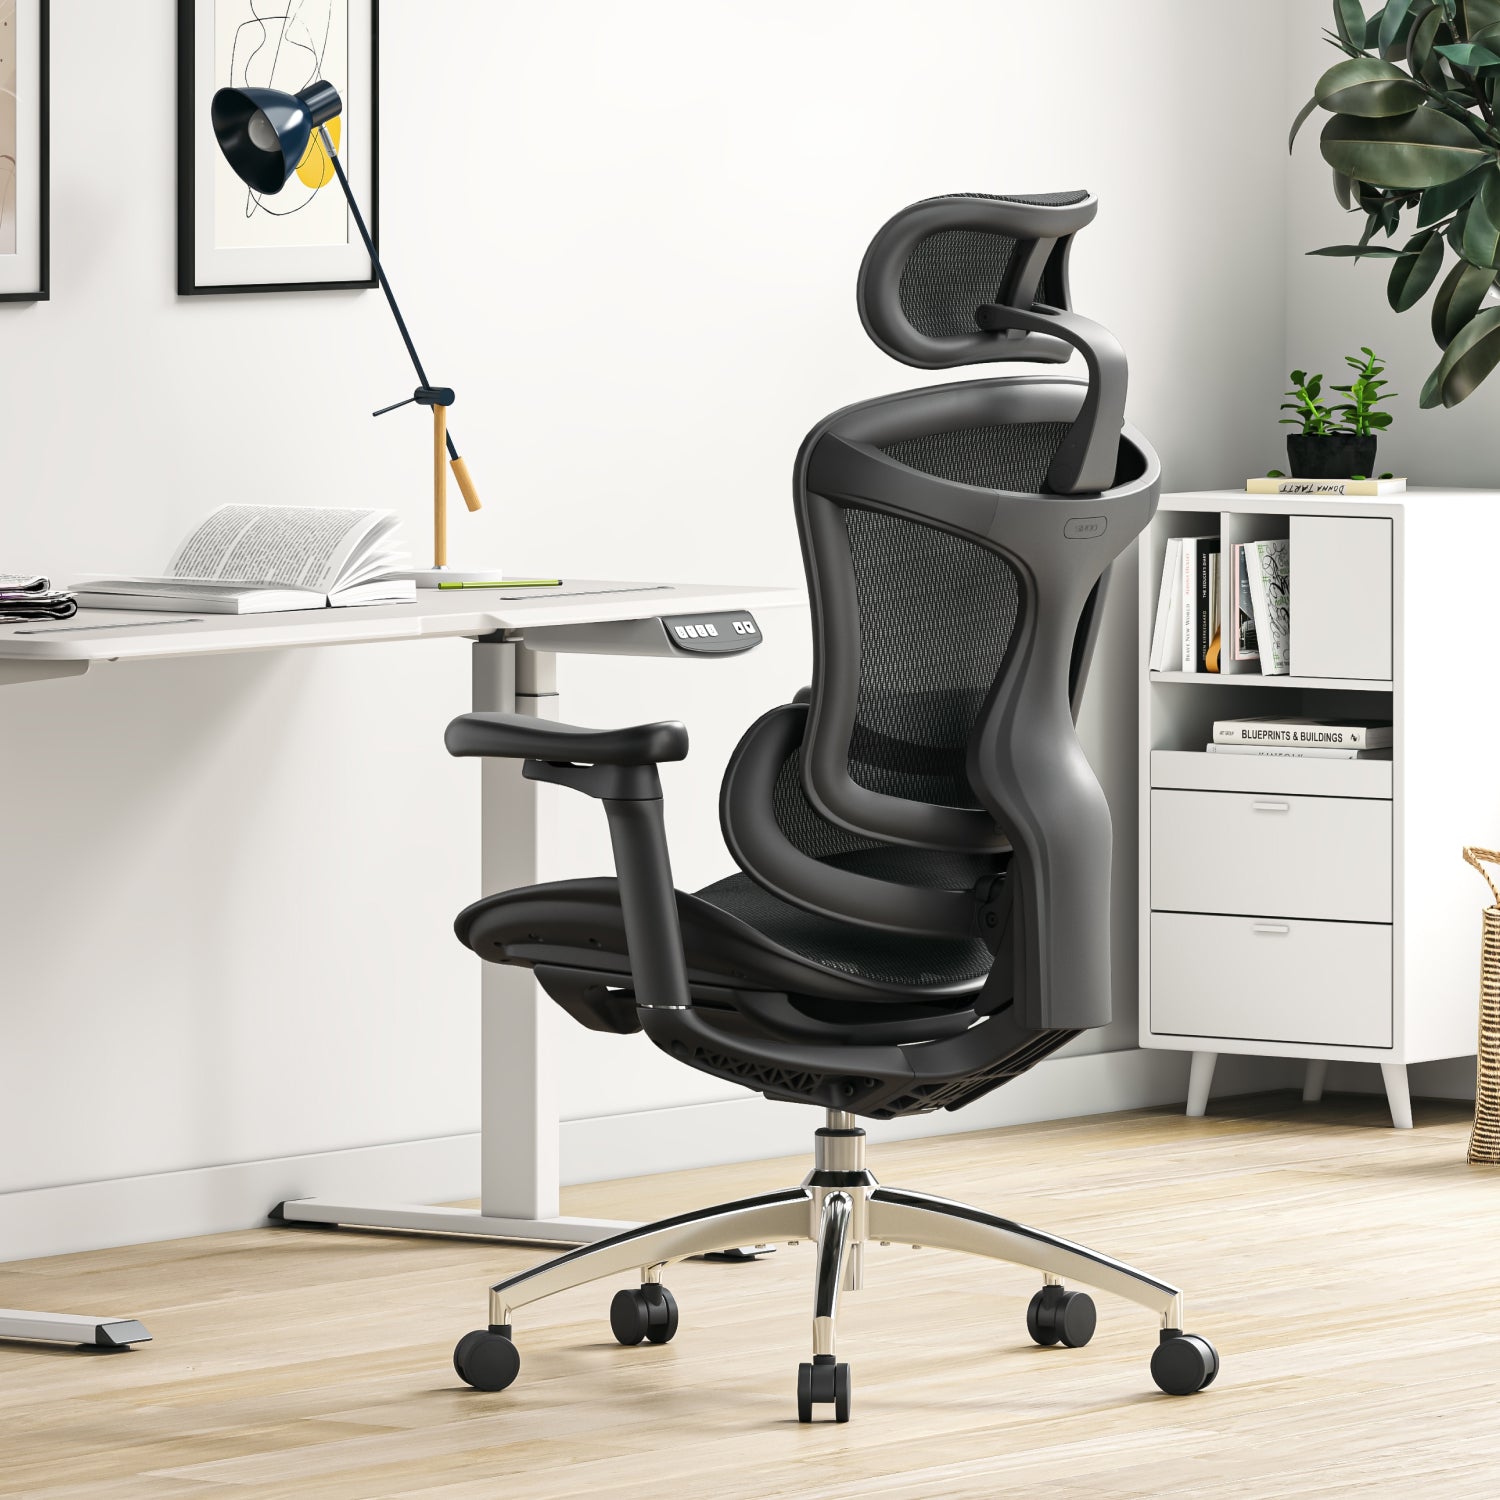 Sihoo M76A chaise de bureau ergonomique avec cintre